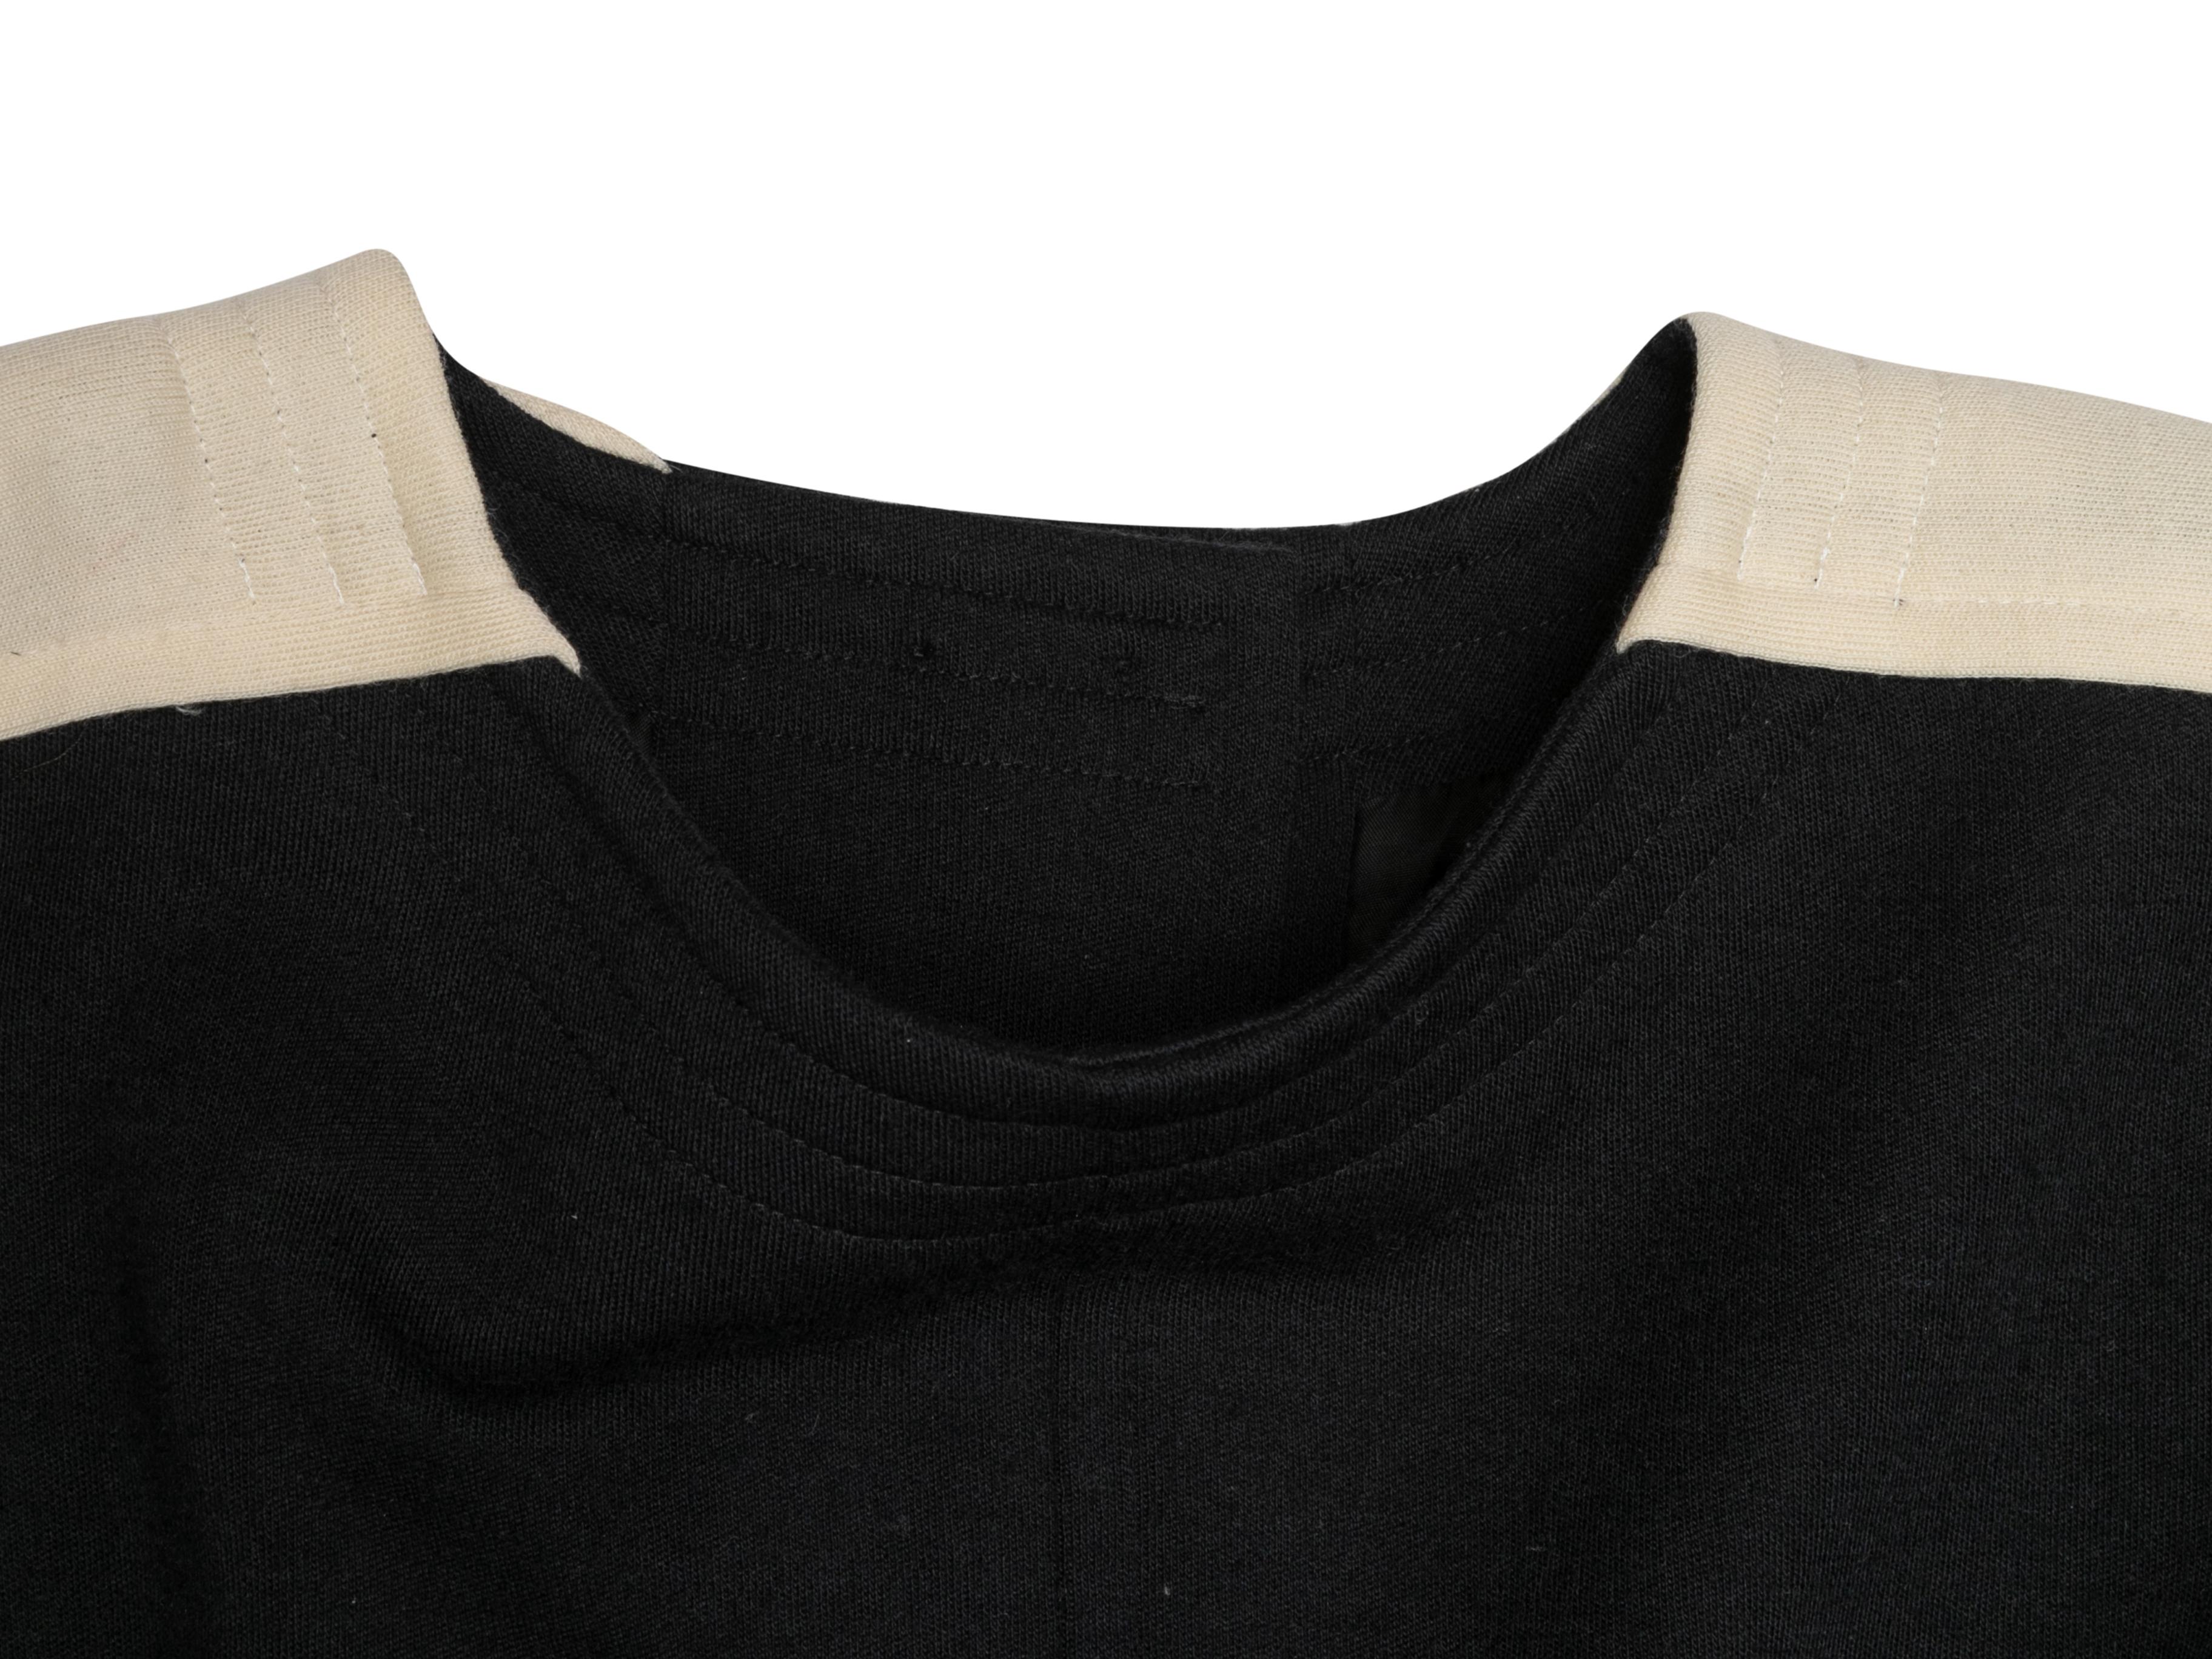 Women's Vintage Black & White Yves Saint Laurent Wool Dress Size FR 38